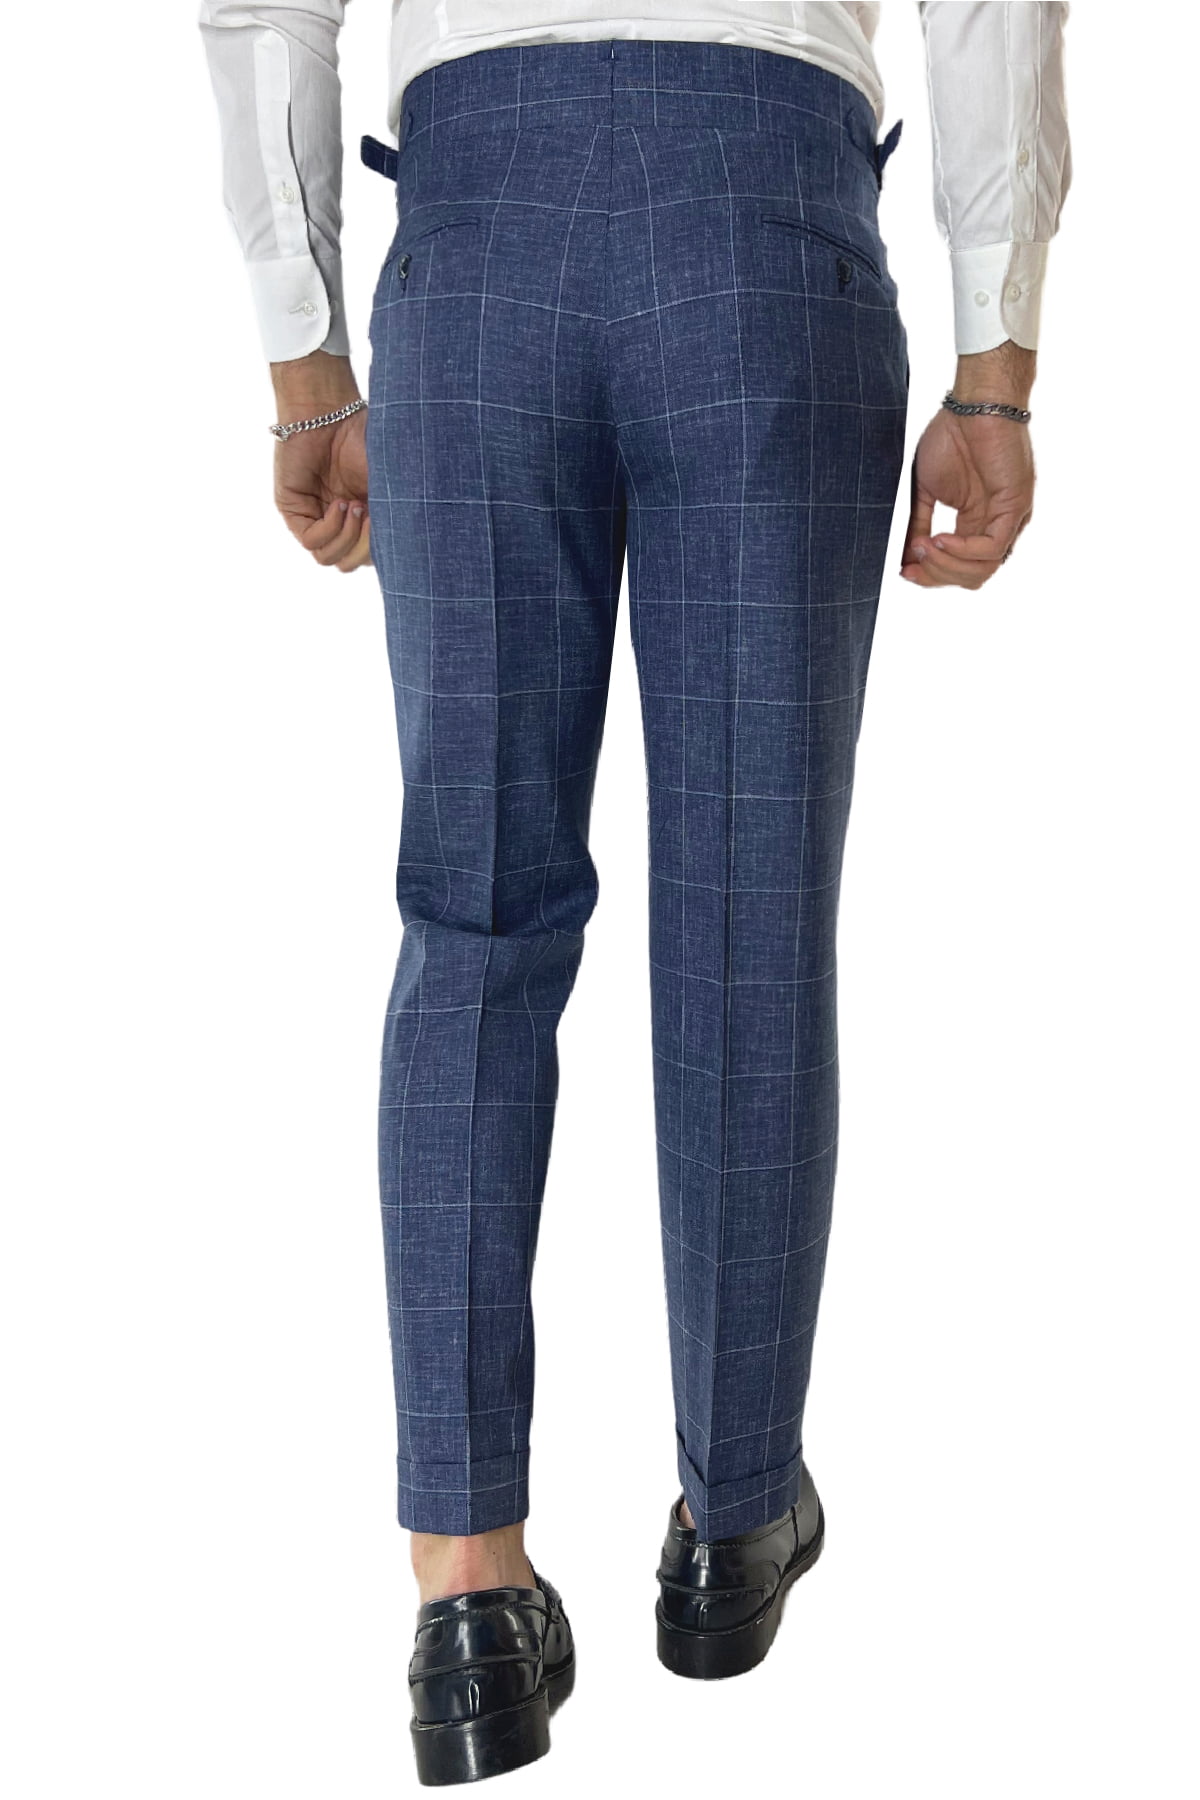 Pantalone uomo blu denim fantasia quadri fresco lana 250 grammi vita alta con pinces fibbie laterali e risvolto 4cm